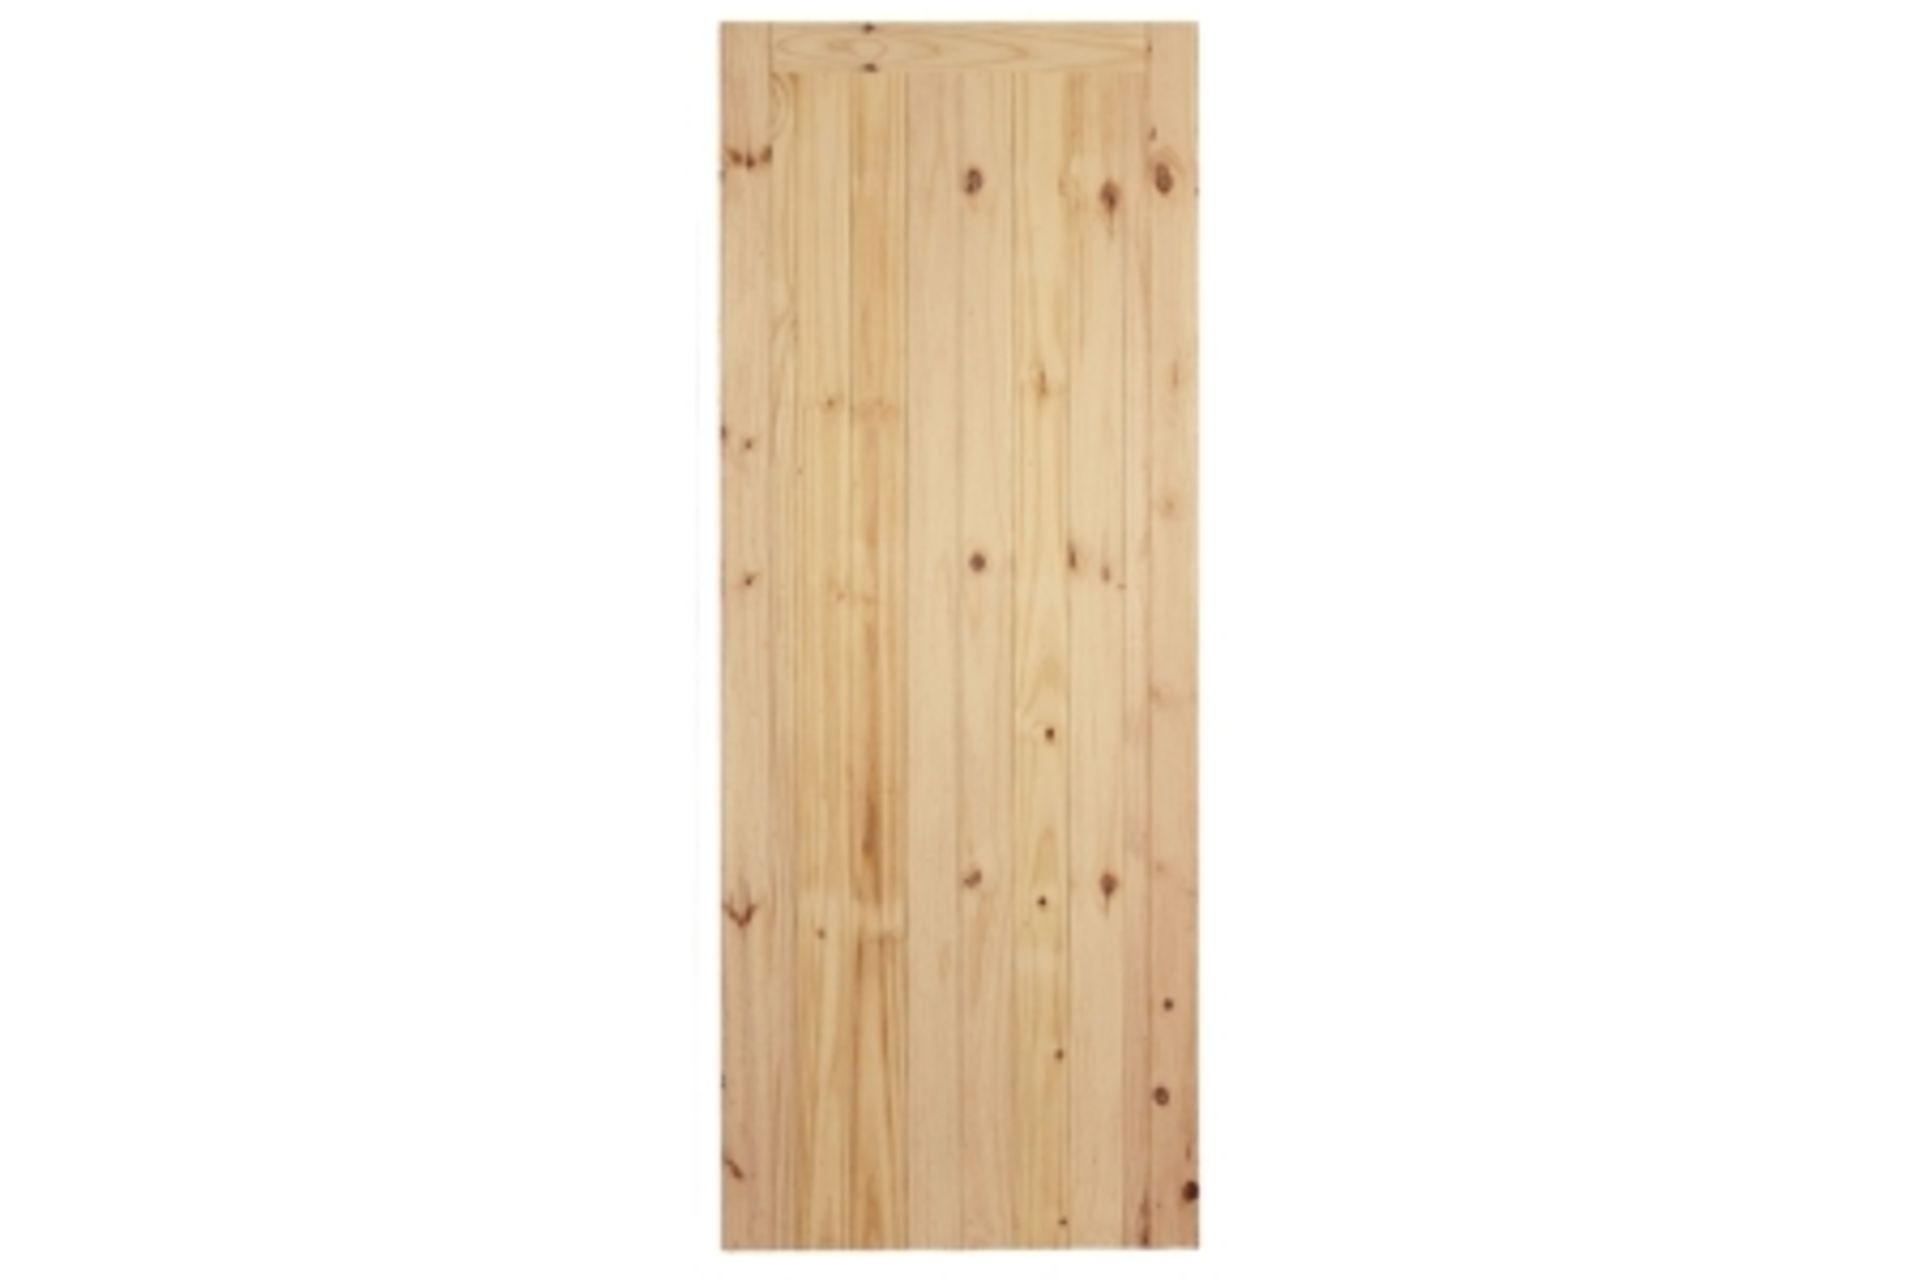 External Softwood FLB Redwood Framed Ledged & Braced Door 1981 mm x 762 mm x 44 mm. RRP £155.00 -